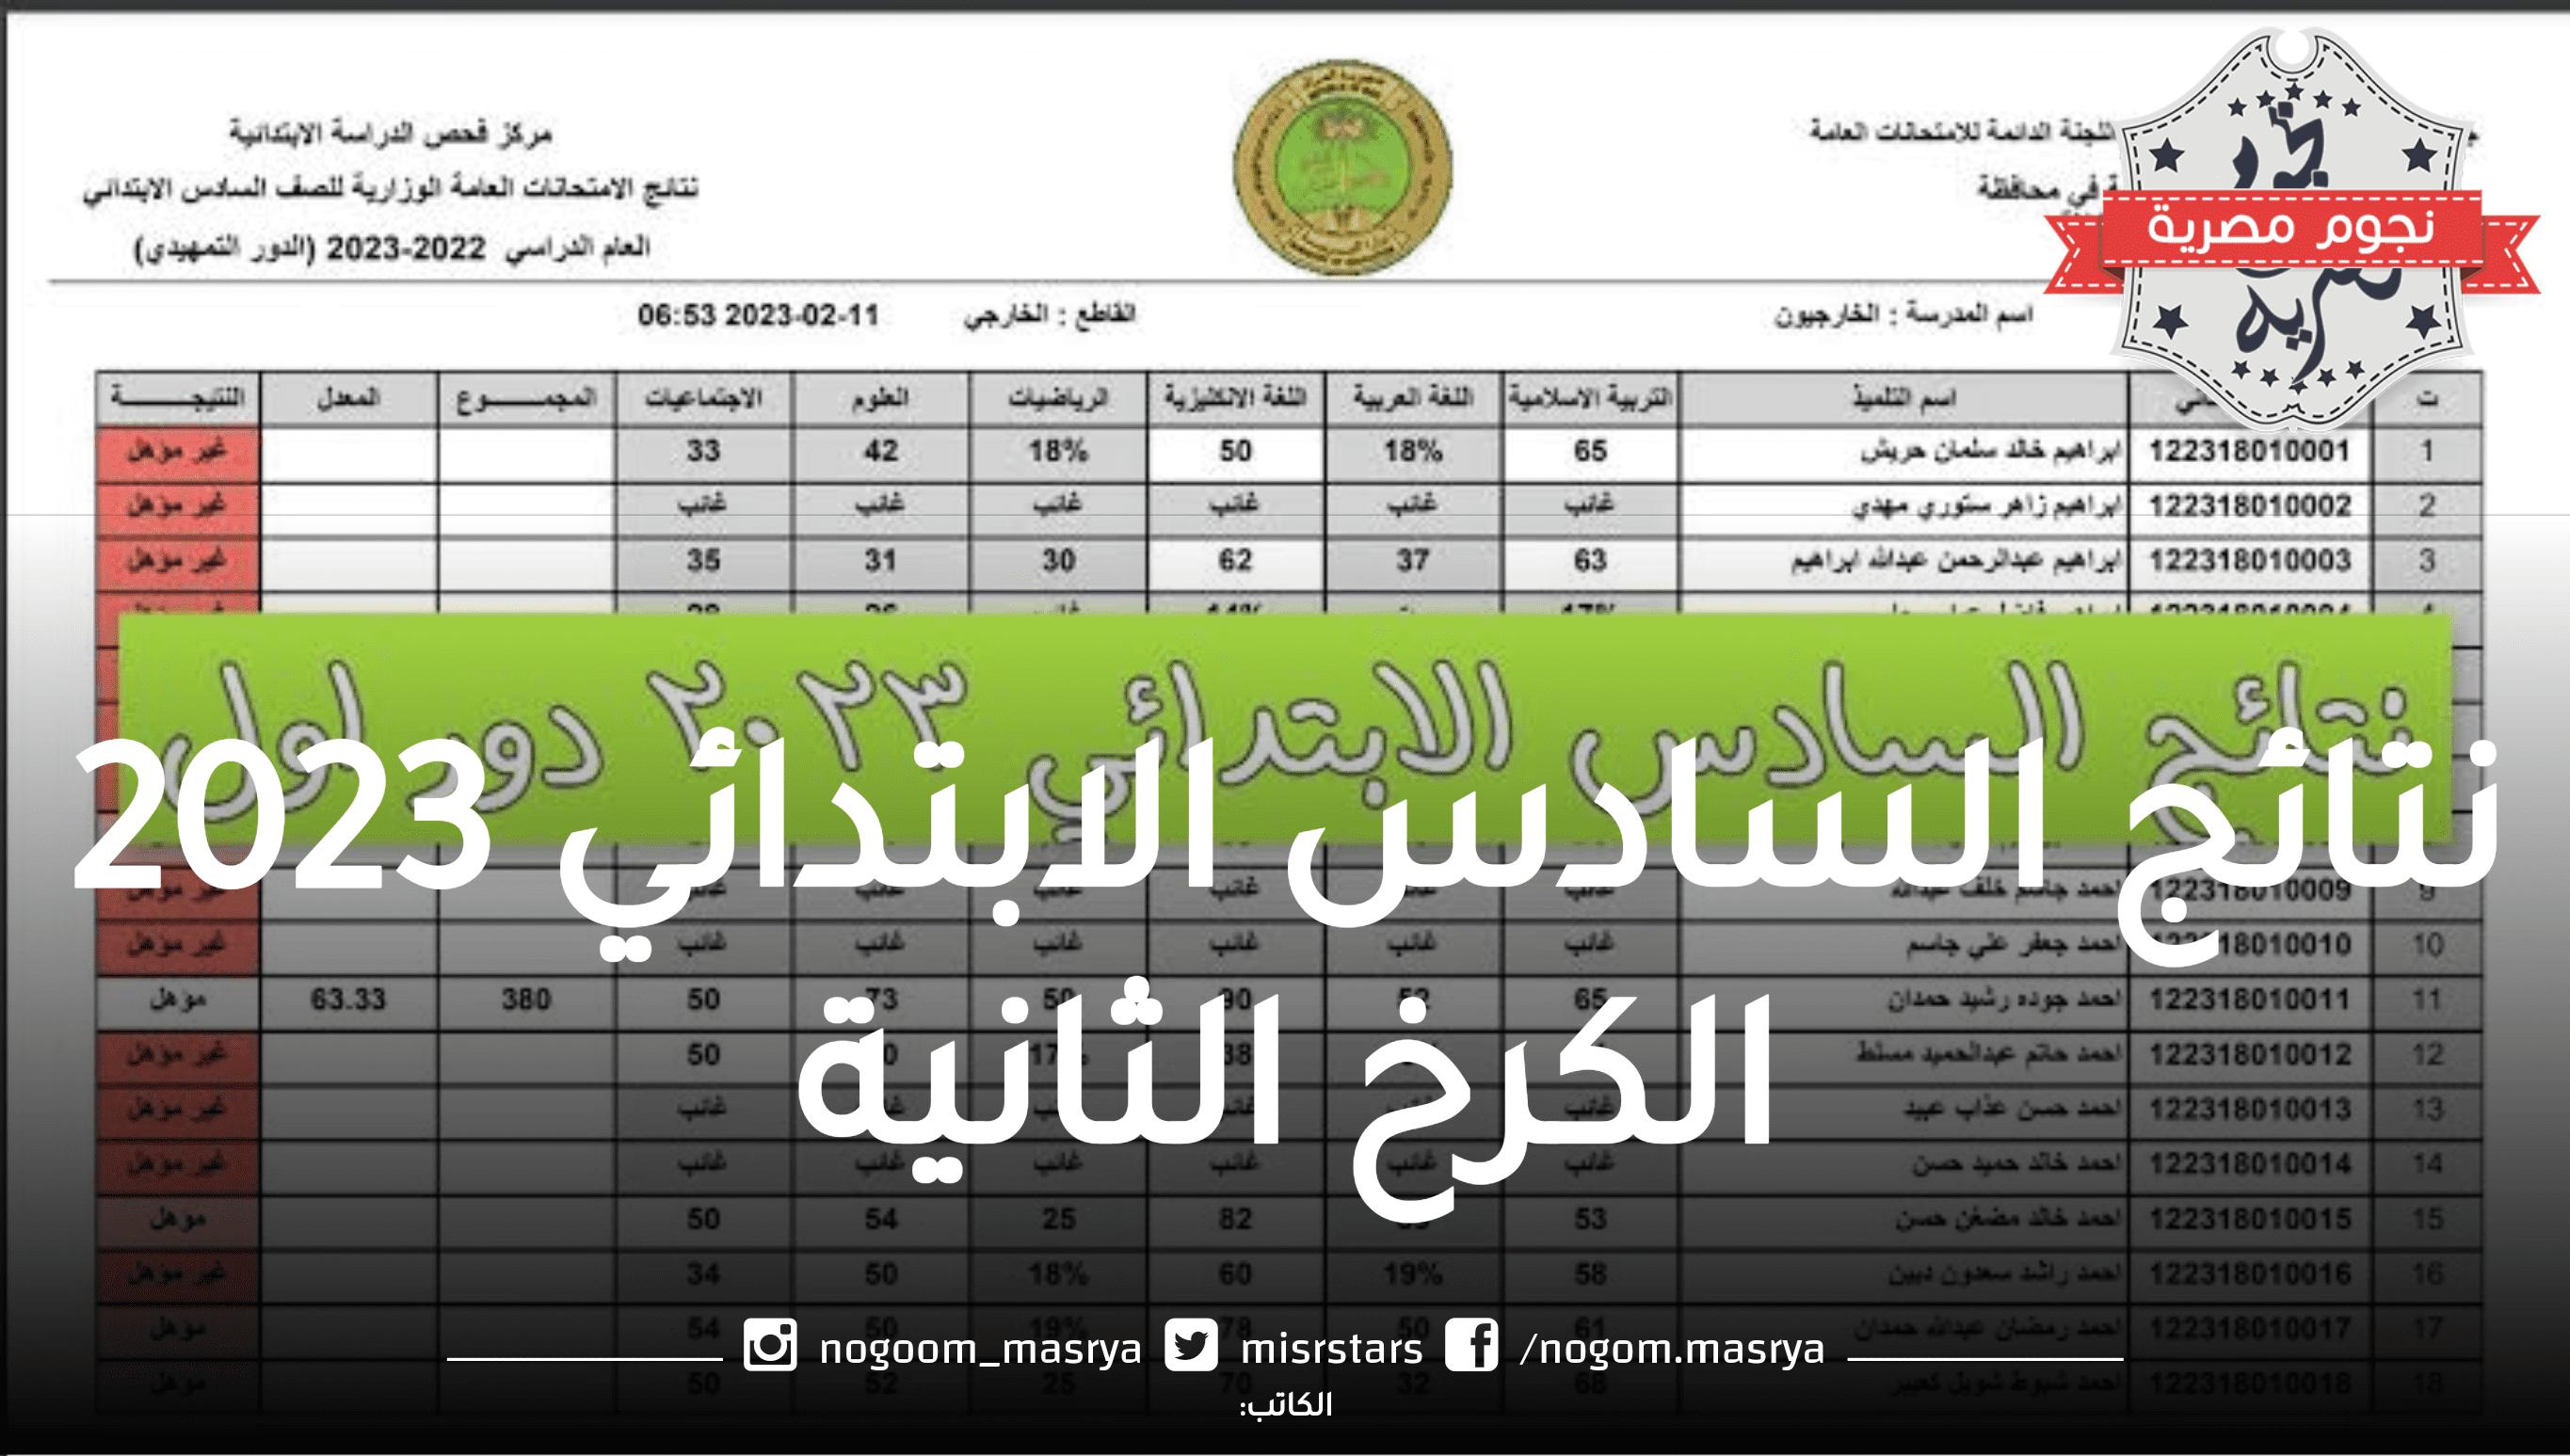 تربية بغداد تعلن عن نتائج امتحانات الصف 6 ابتدائي الدور الاول في الكرخ الثانية